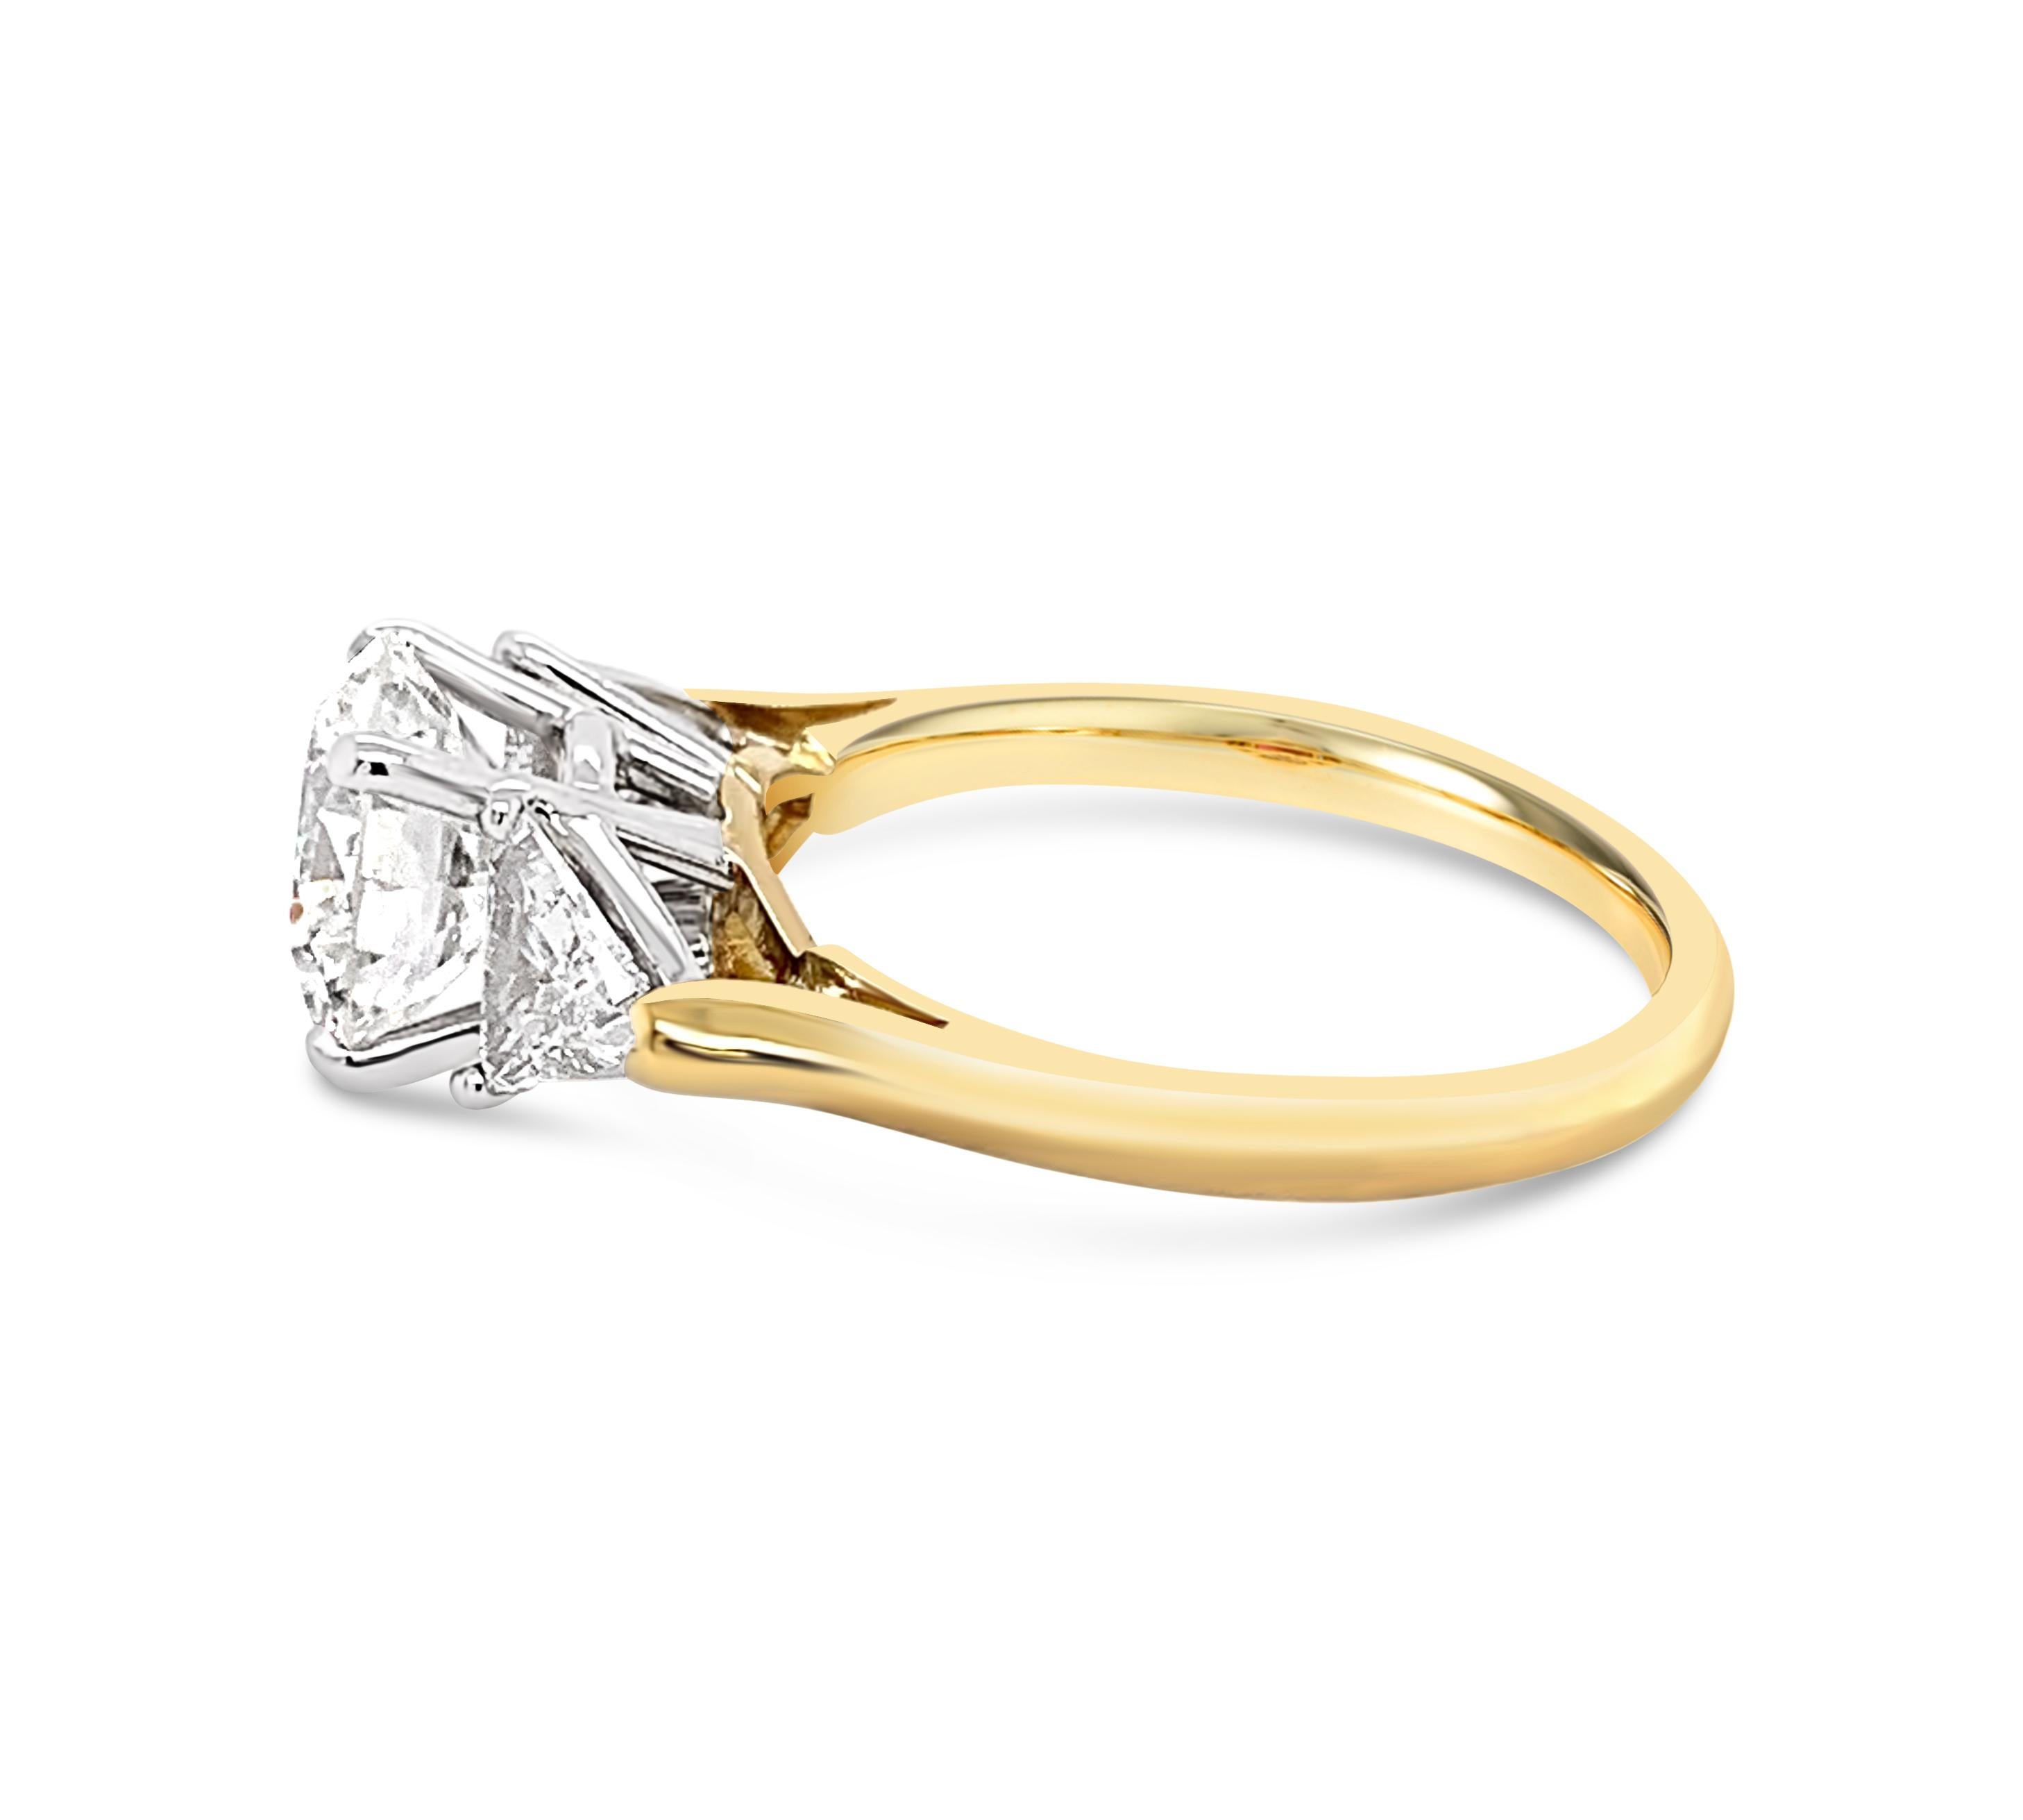 18 carat gold engagement ring